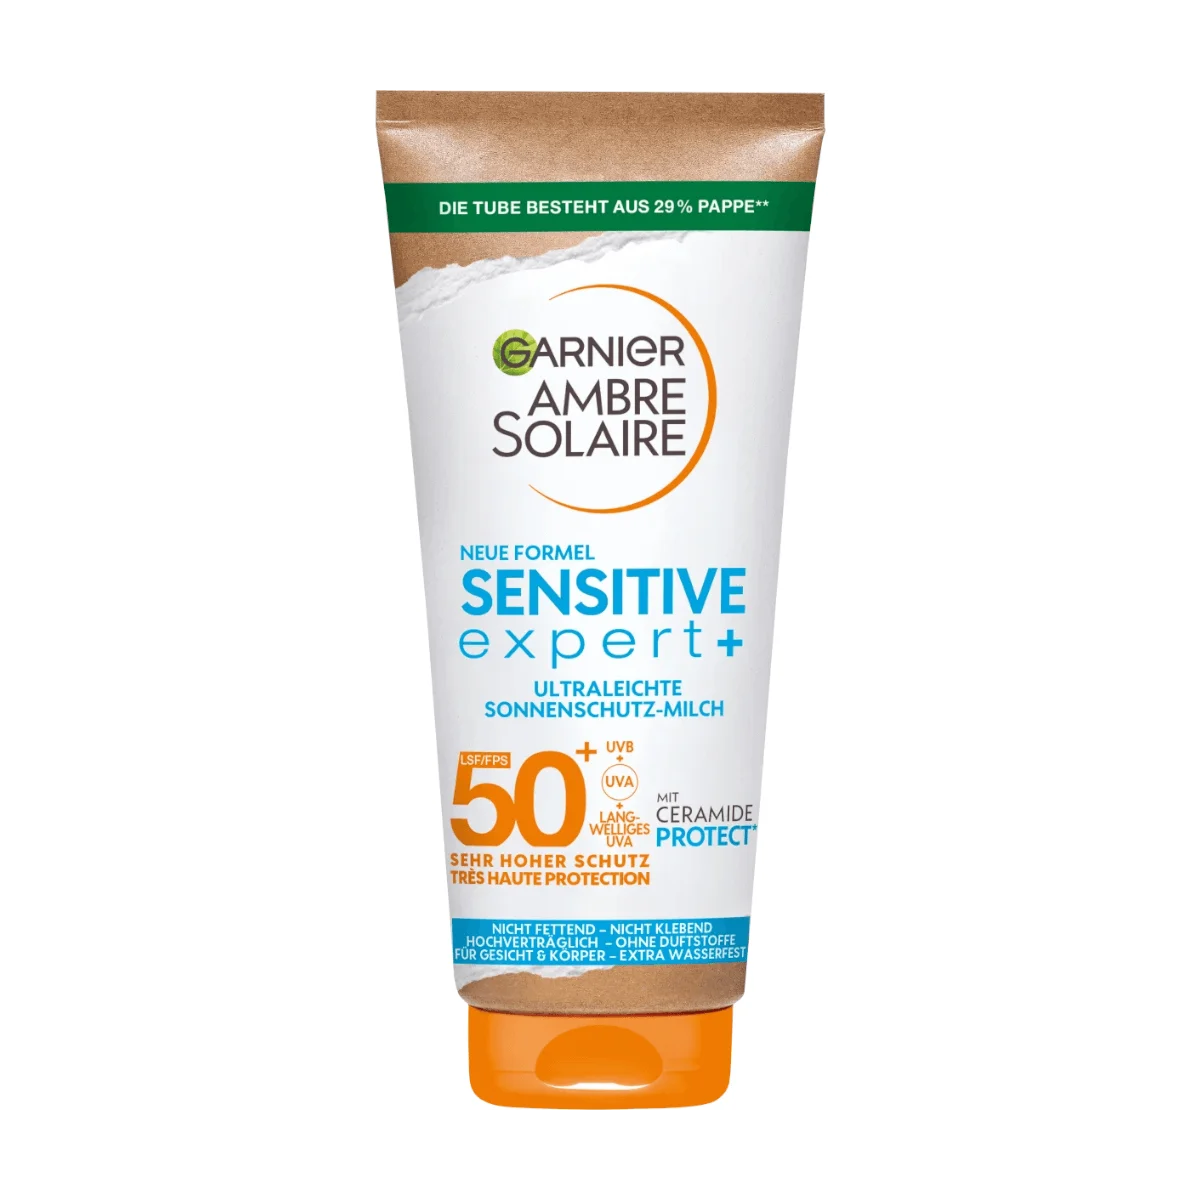 Garnier Ambre Solaire expert+ Sonnenmilch sensitive